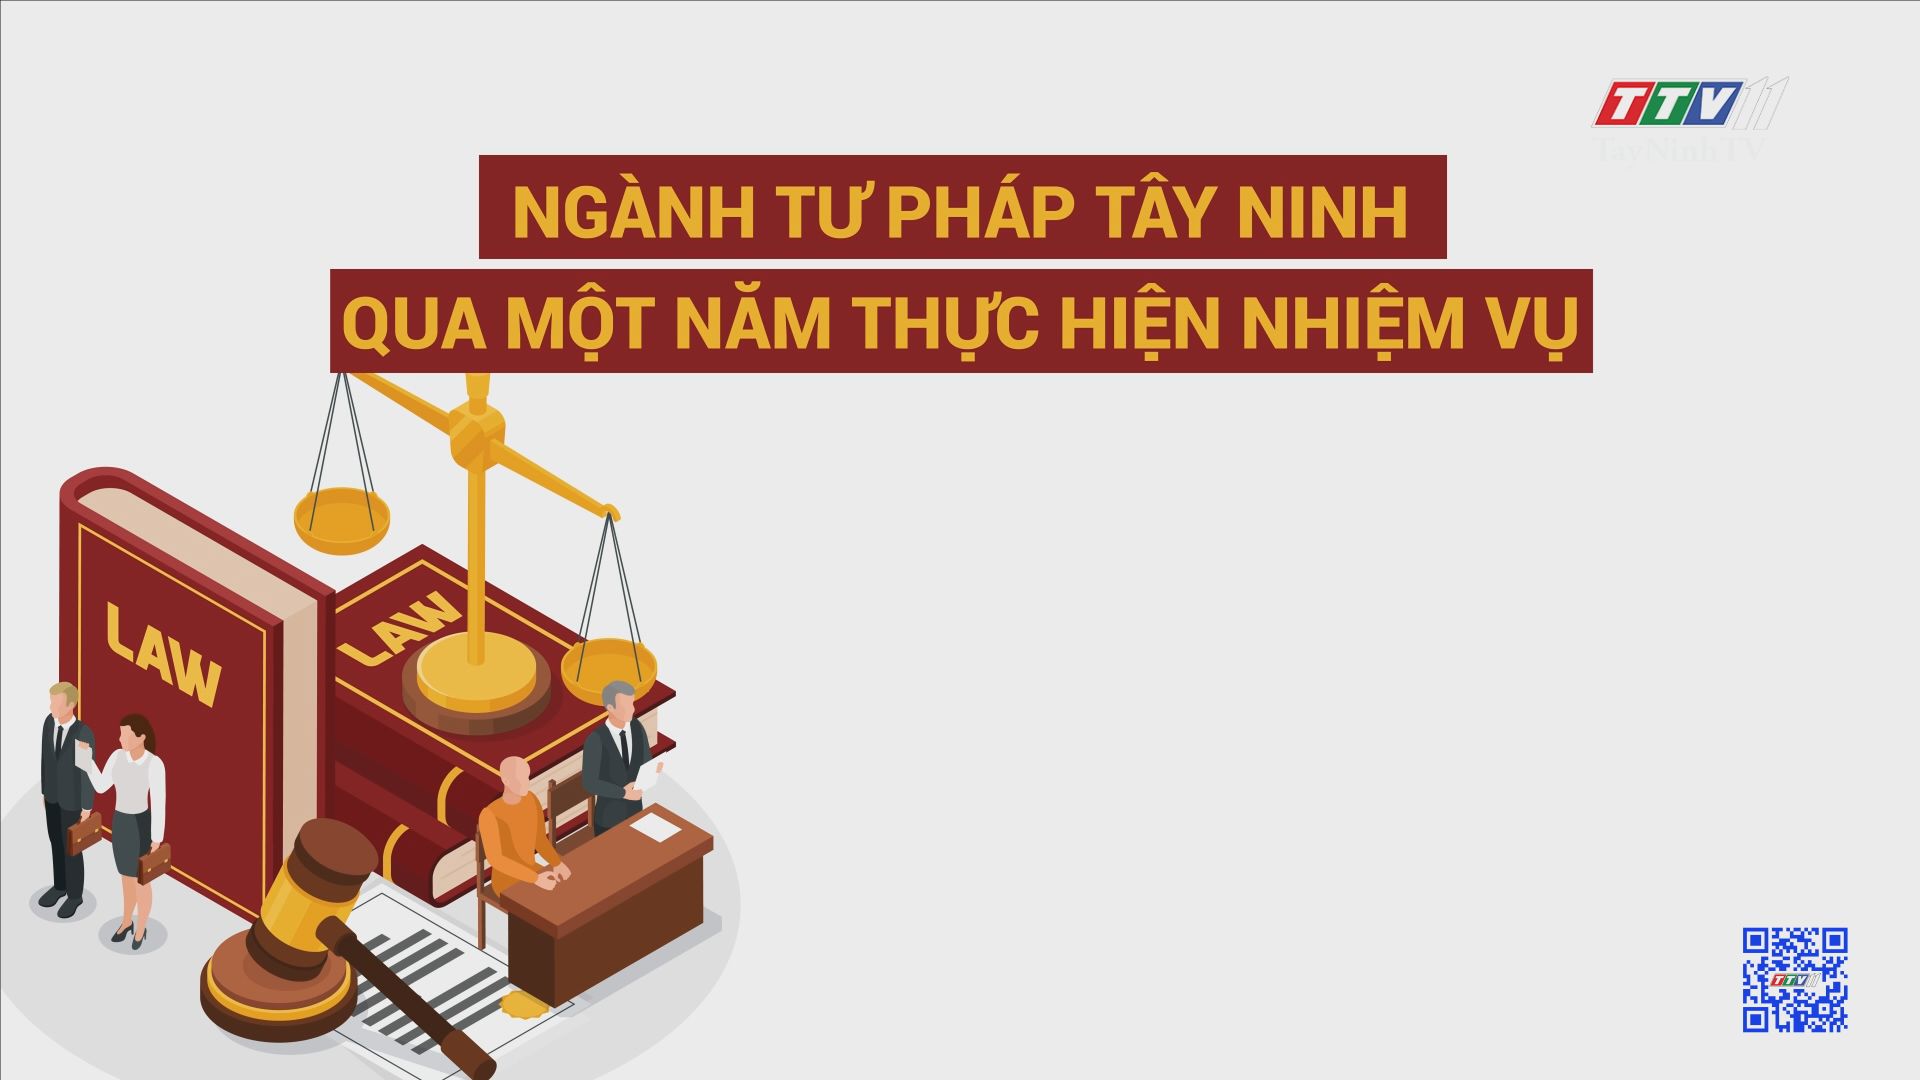 Ngành Tư pháp Tây Ninh qua một năm thực hiện nhiệm vụ | PHÁP LUẬT VÀ ĐỜI SỐNG | TayNinhTV